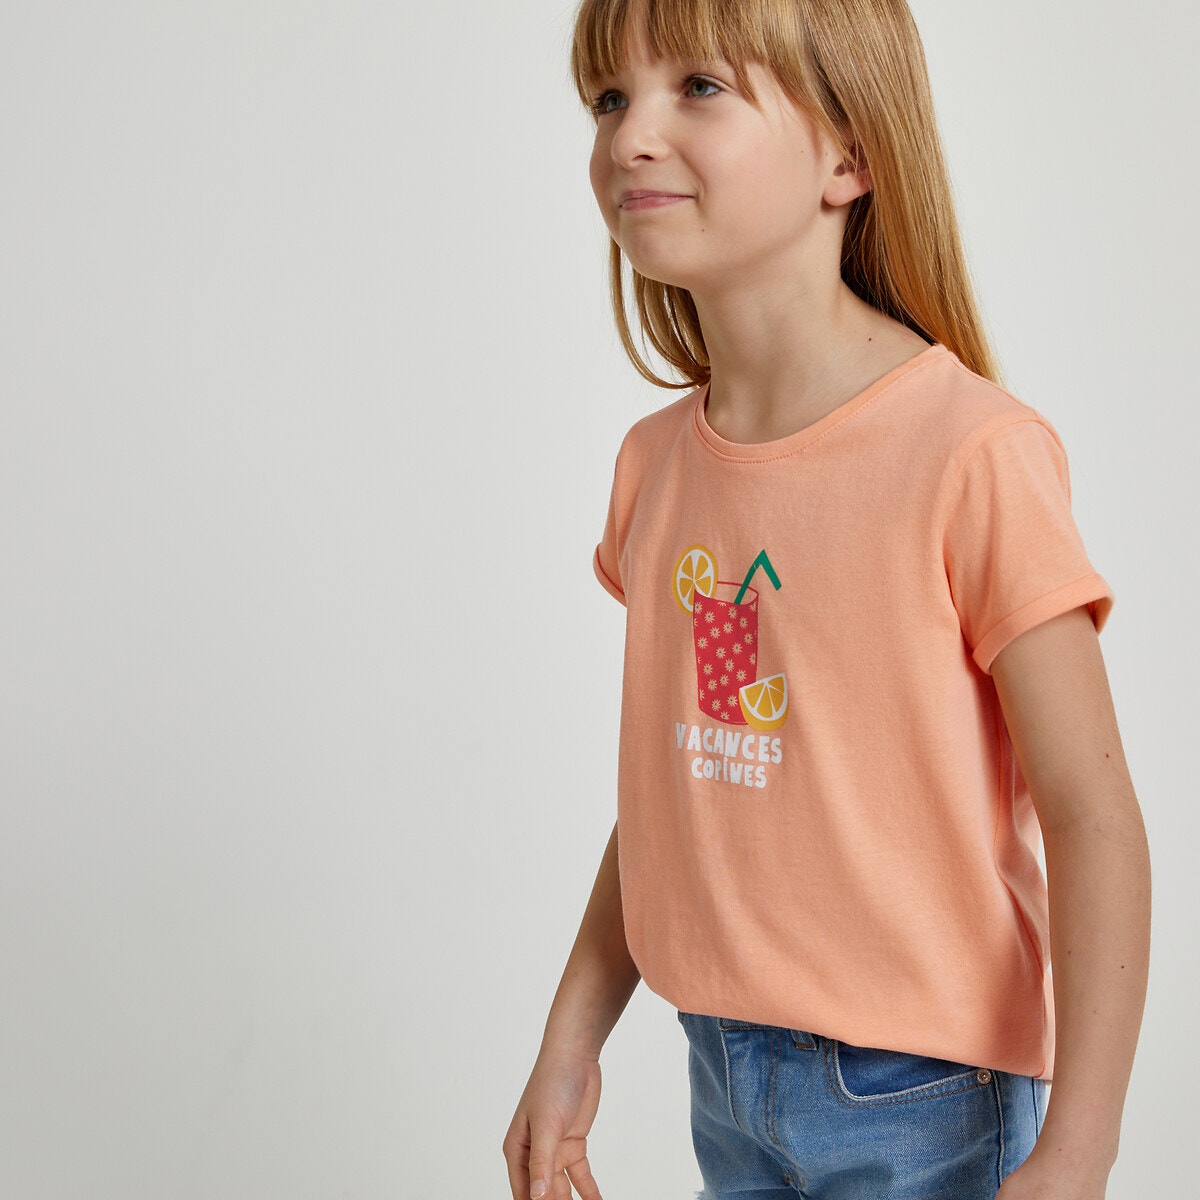 Μόδα > Παιδικά > Κορίτσι > T-shirt, αμάνικες μπλούζες > Κοντομάνικες μπλούζες Σετ 4 T-shirt με στρογγυλή λαιμόκοψη